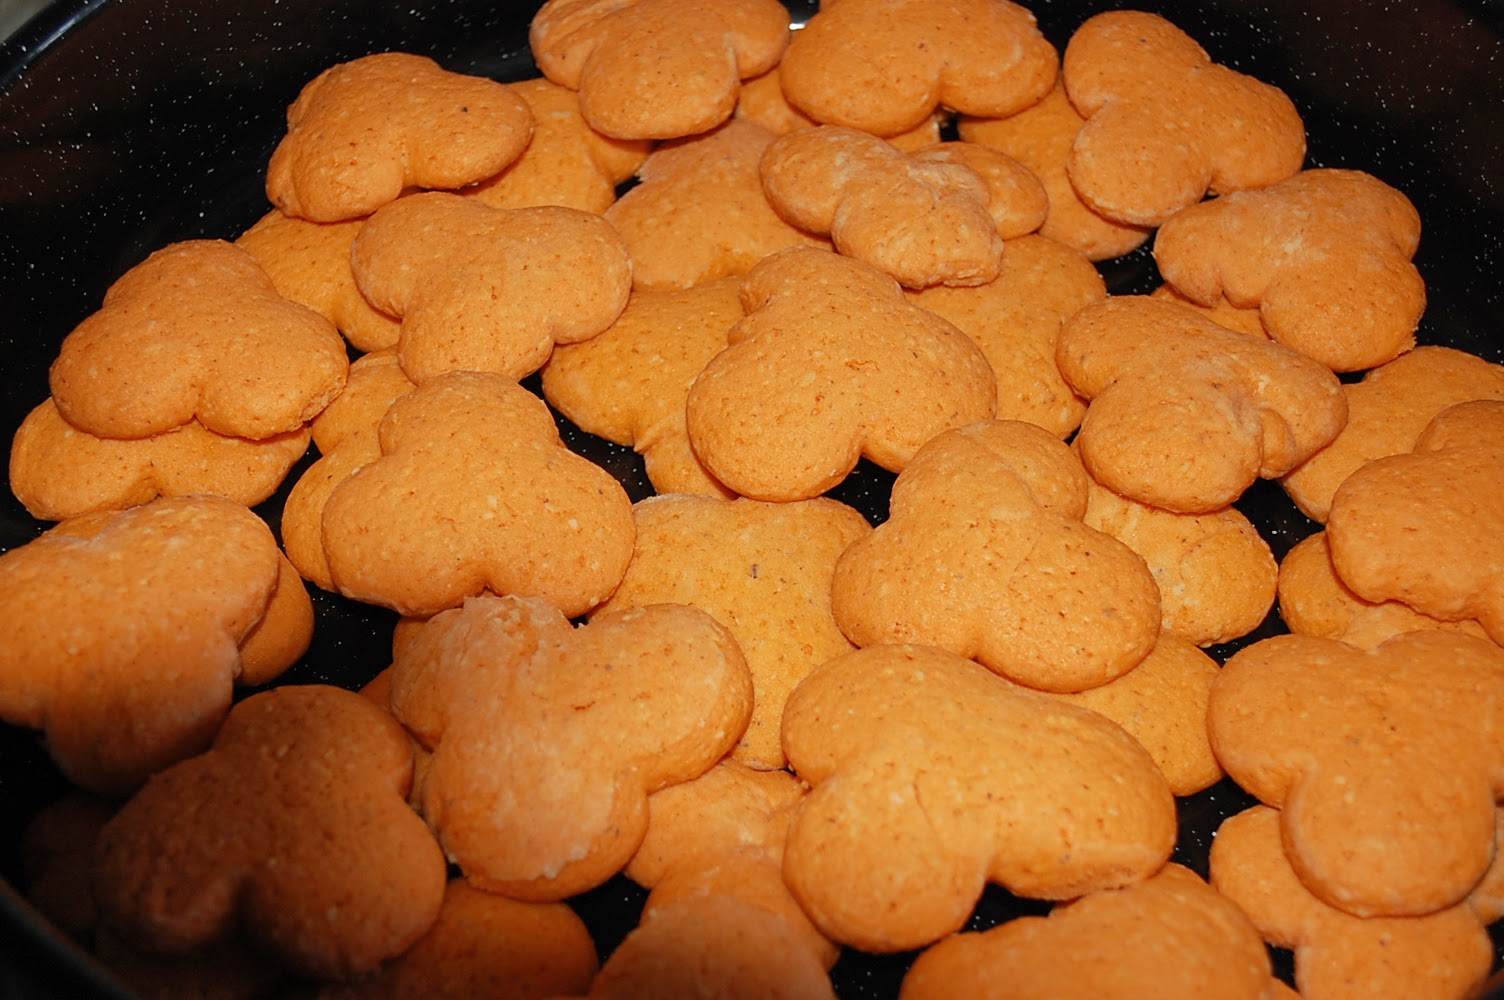 Wunderlander-Kochen und Backen mit Bildern : Kekse backen leicht gemacht